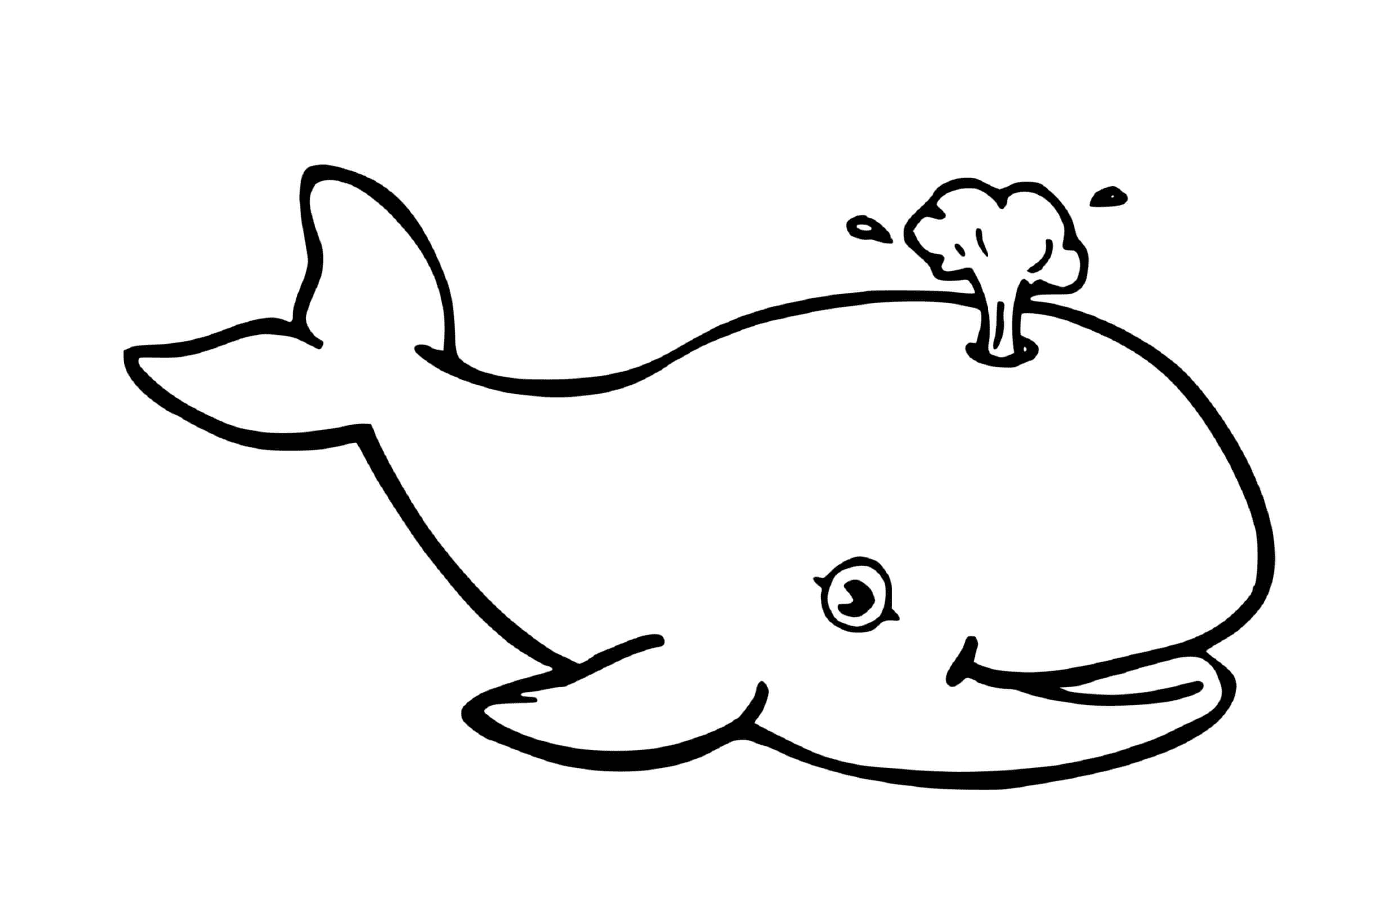  кит и грибы 